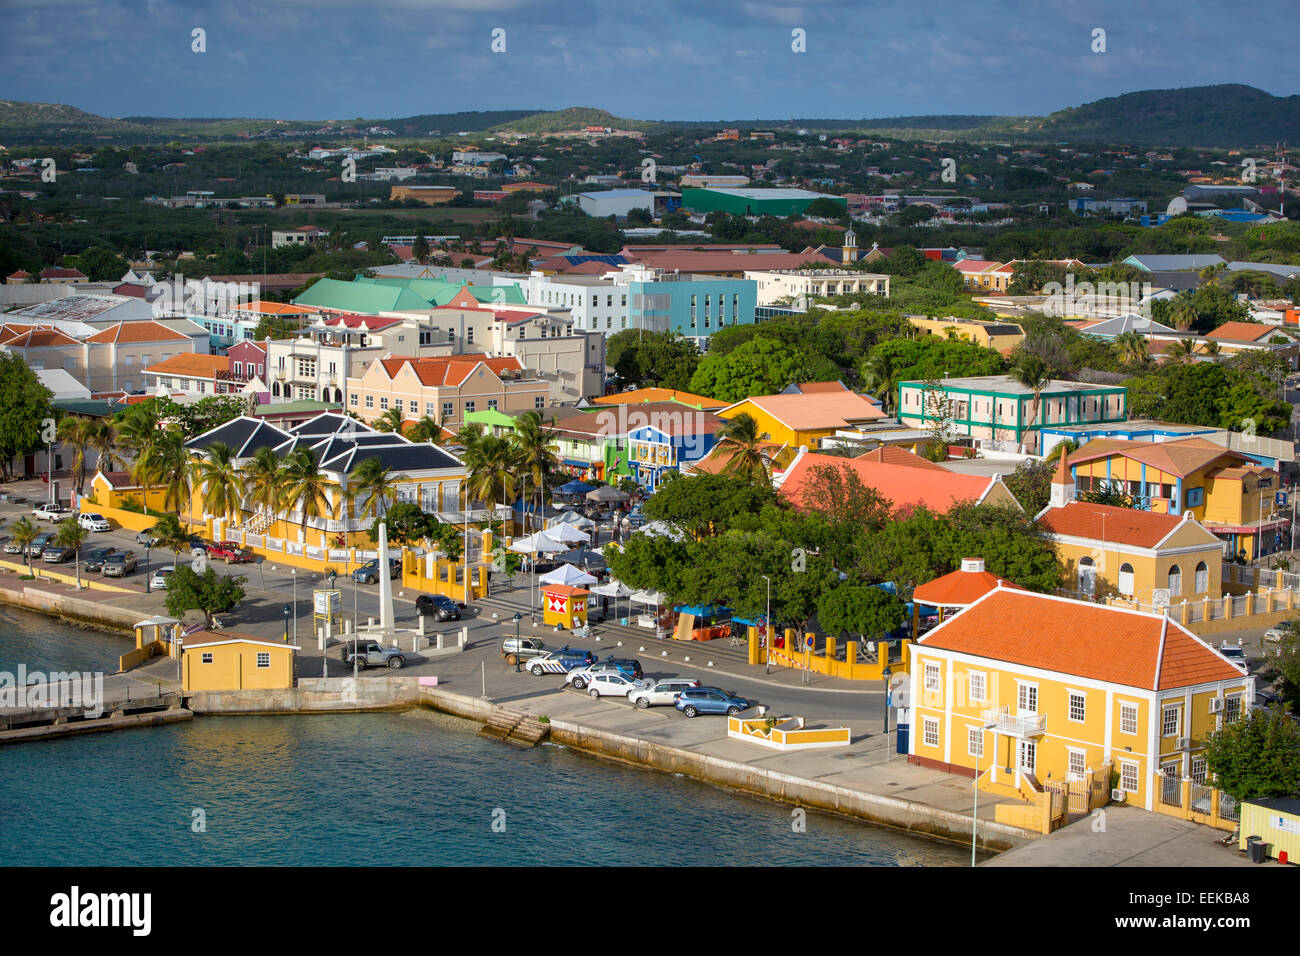 Vue sur le secteur du quai et de la ville de Kralendijk, Bonaire, Pays-Bas Antilles Banque D'Images